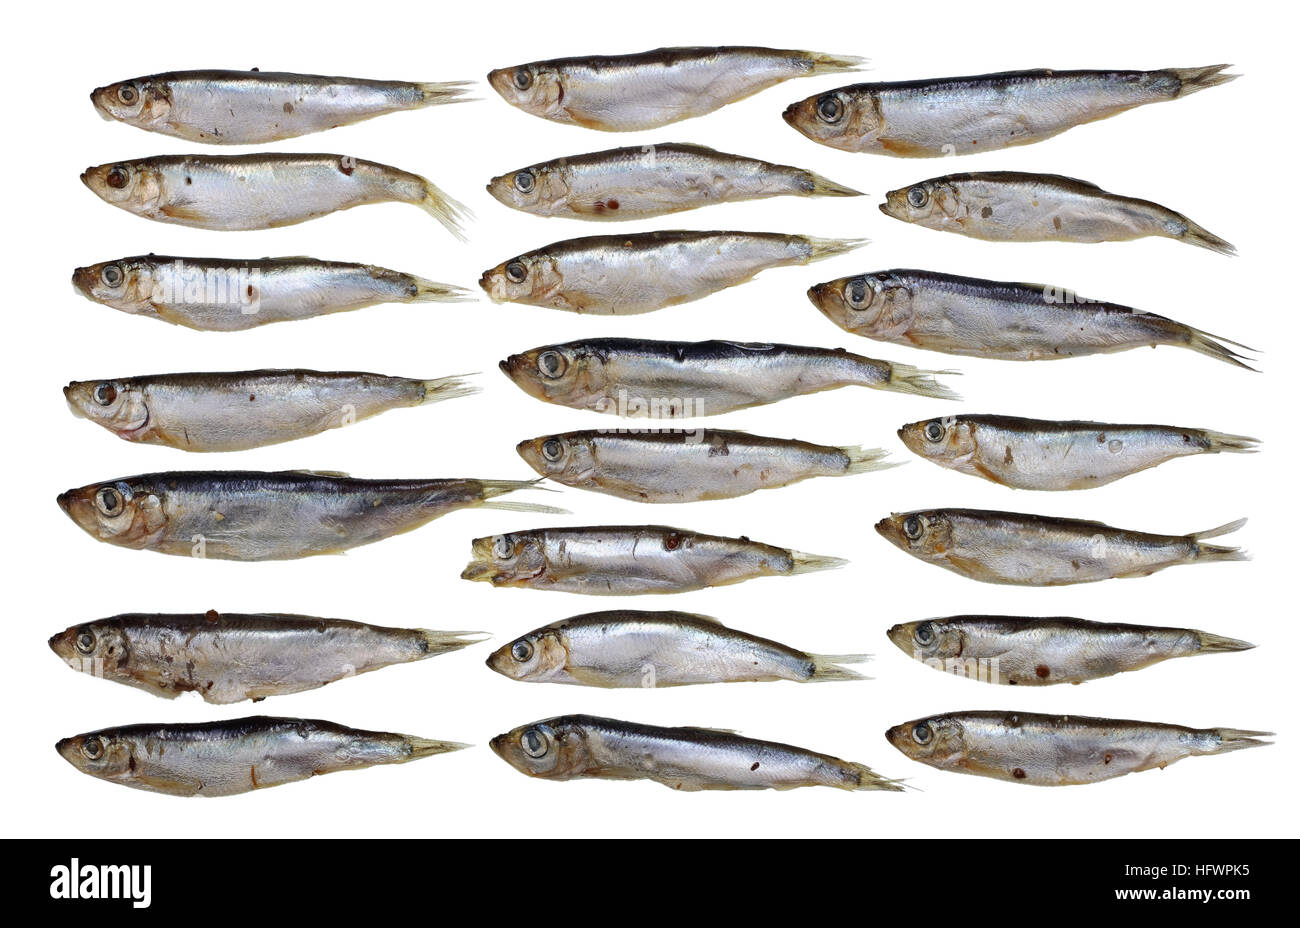 Baltic fish immagini e fotografie stock ad alta risoluzione - Alamy